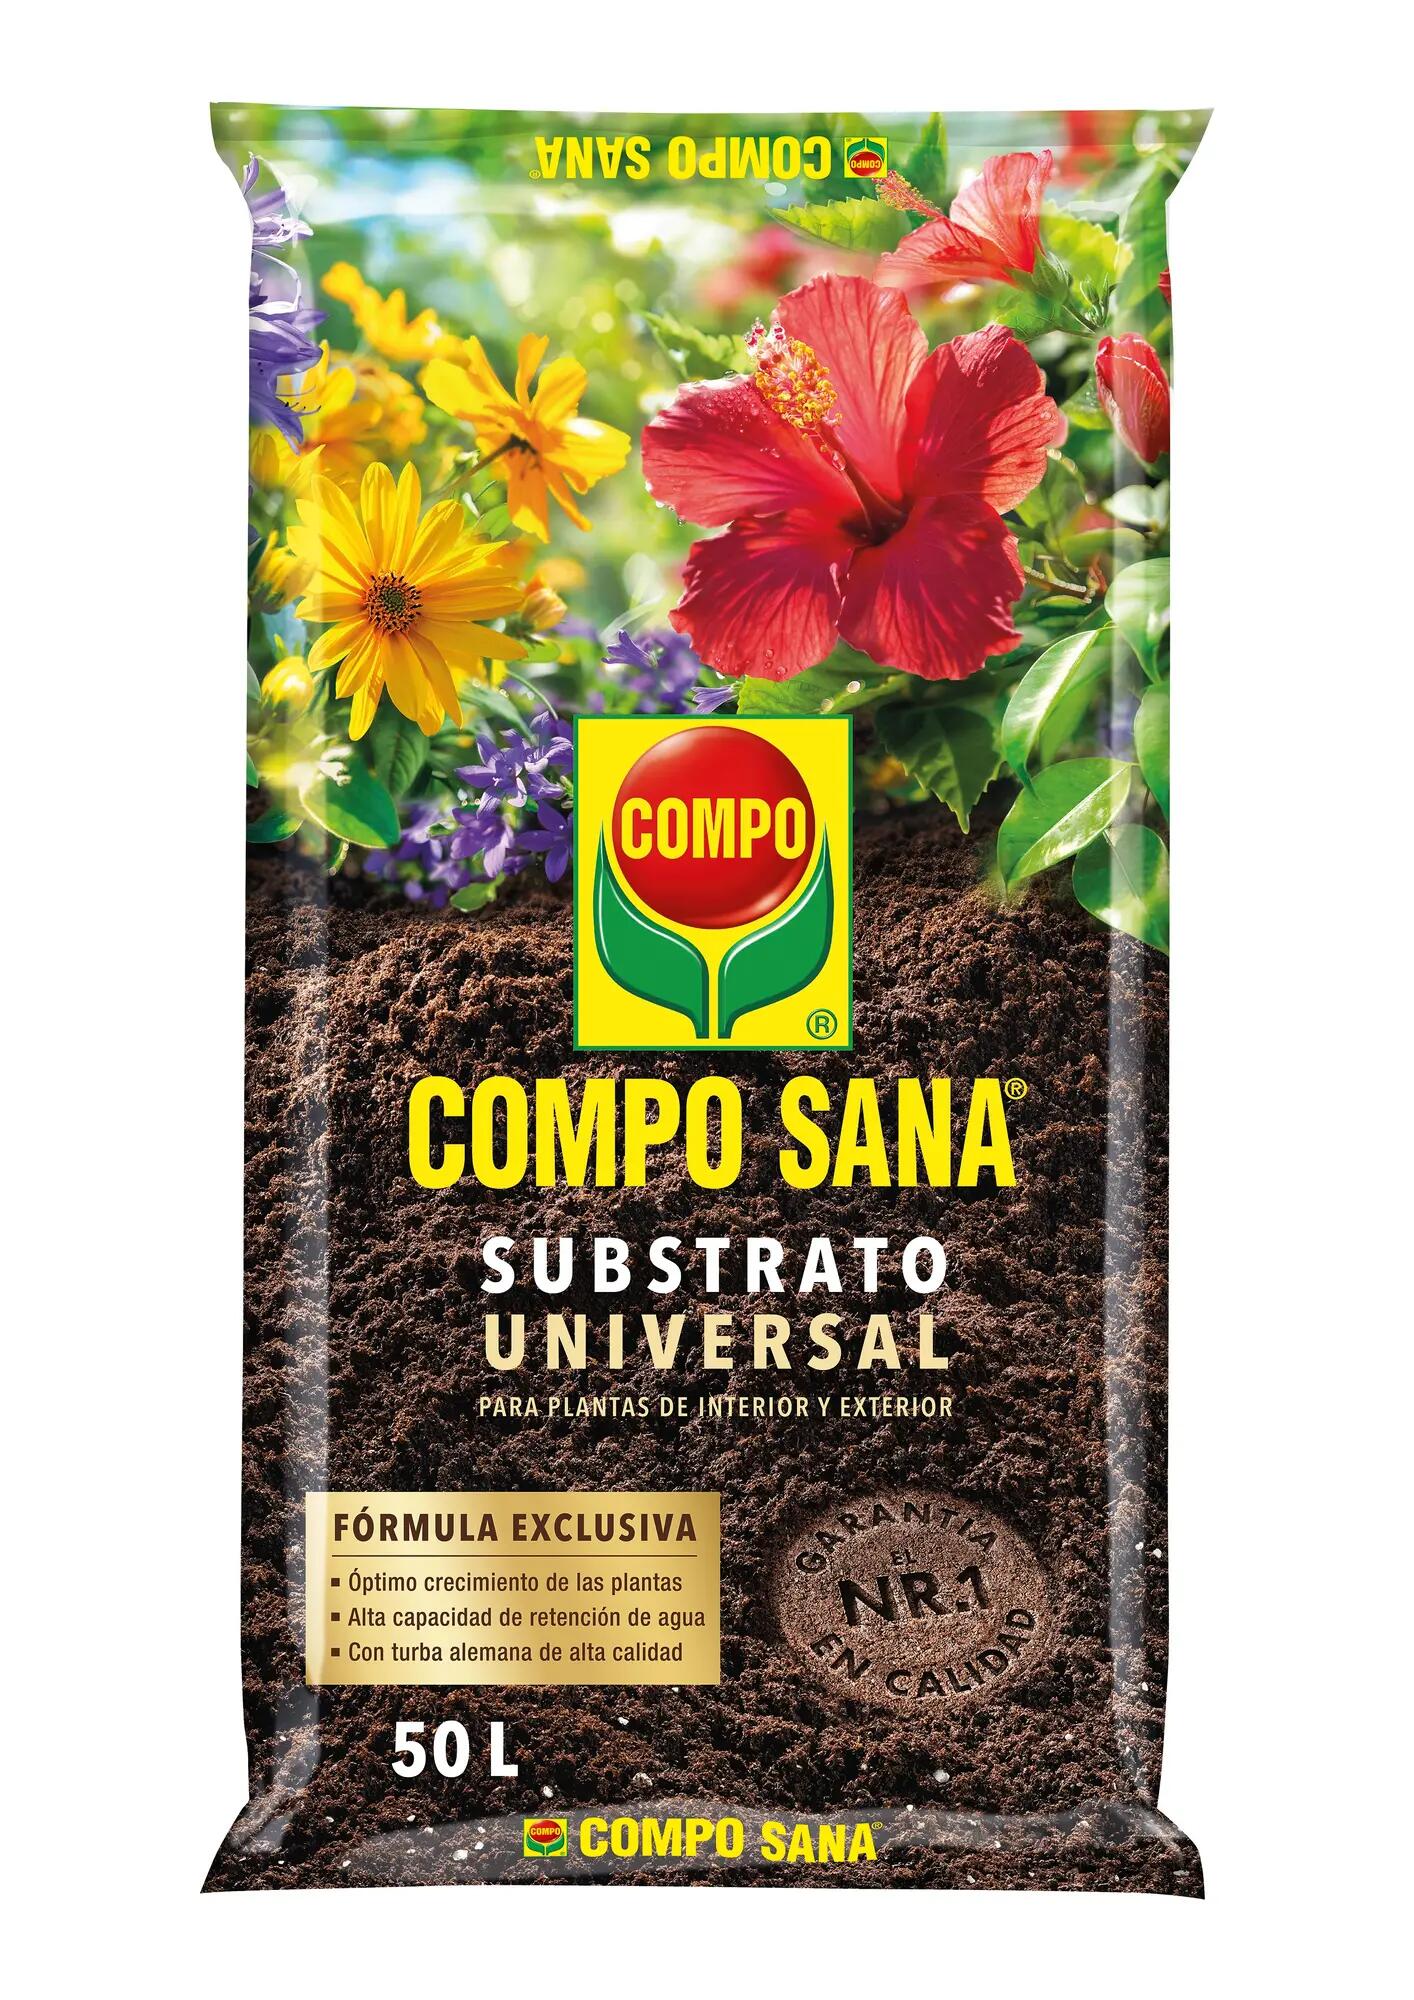 Sustrato universal compo sana para todo tipo de plantas interior y exterior 50l